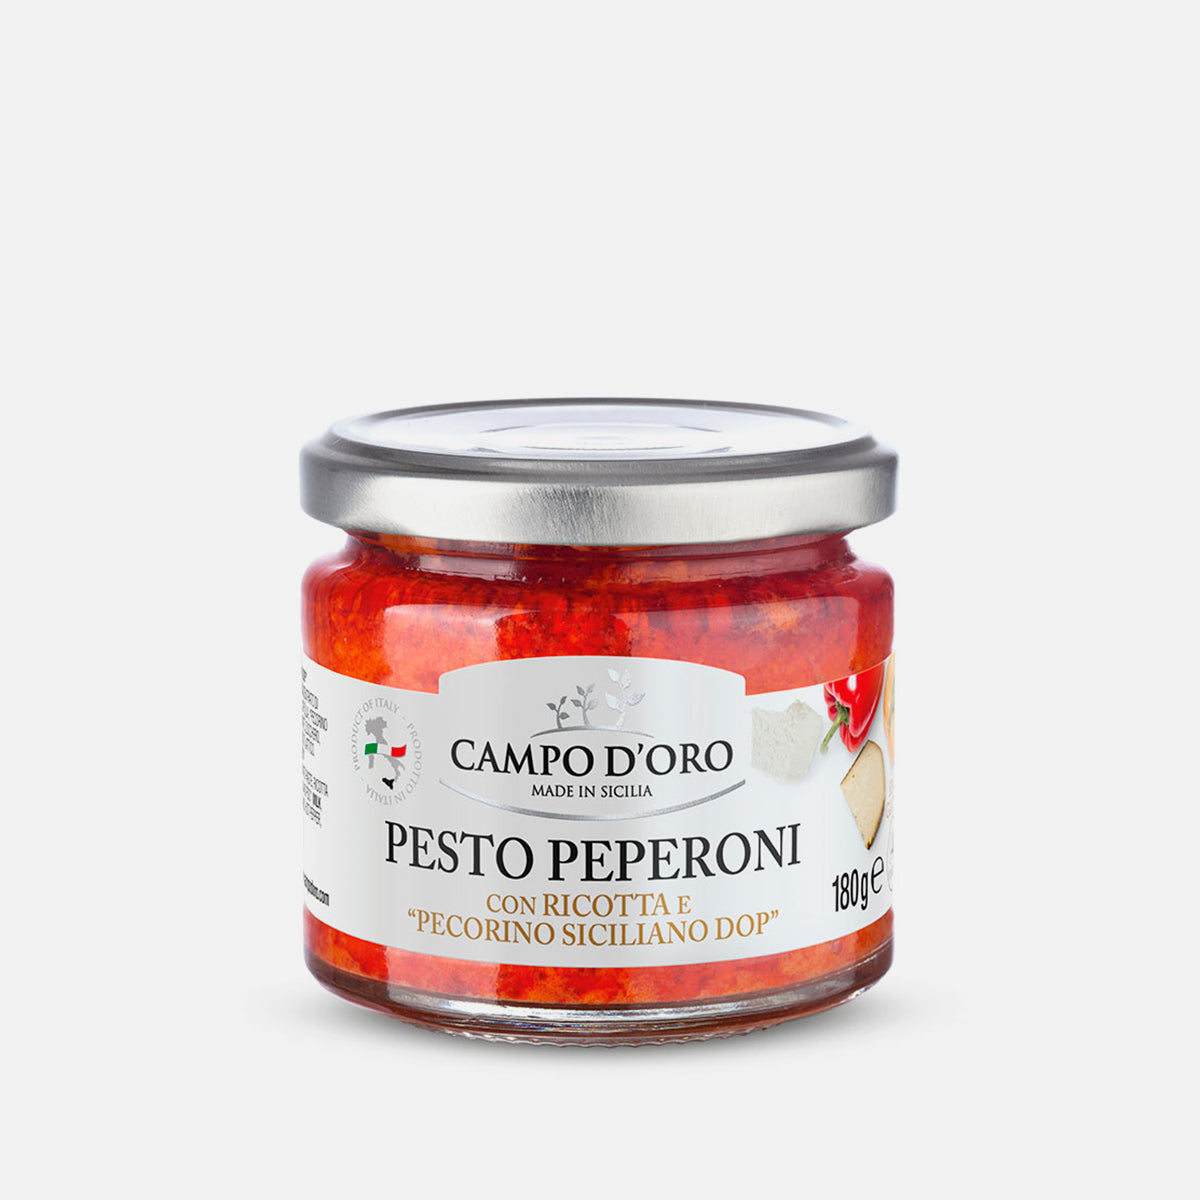 Sicilian Pesto with Peppers and Pecorino Siciliano DOP